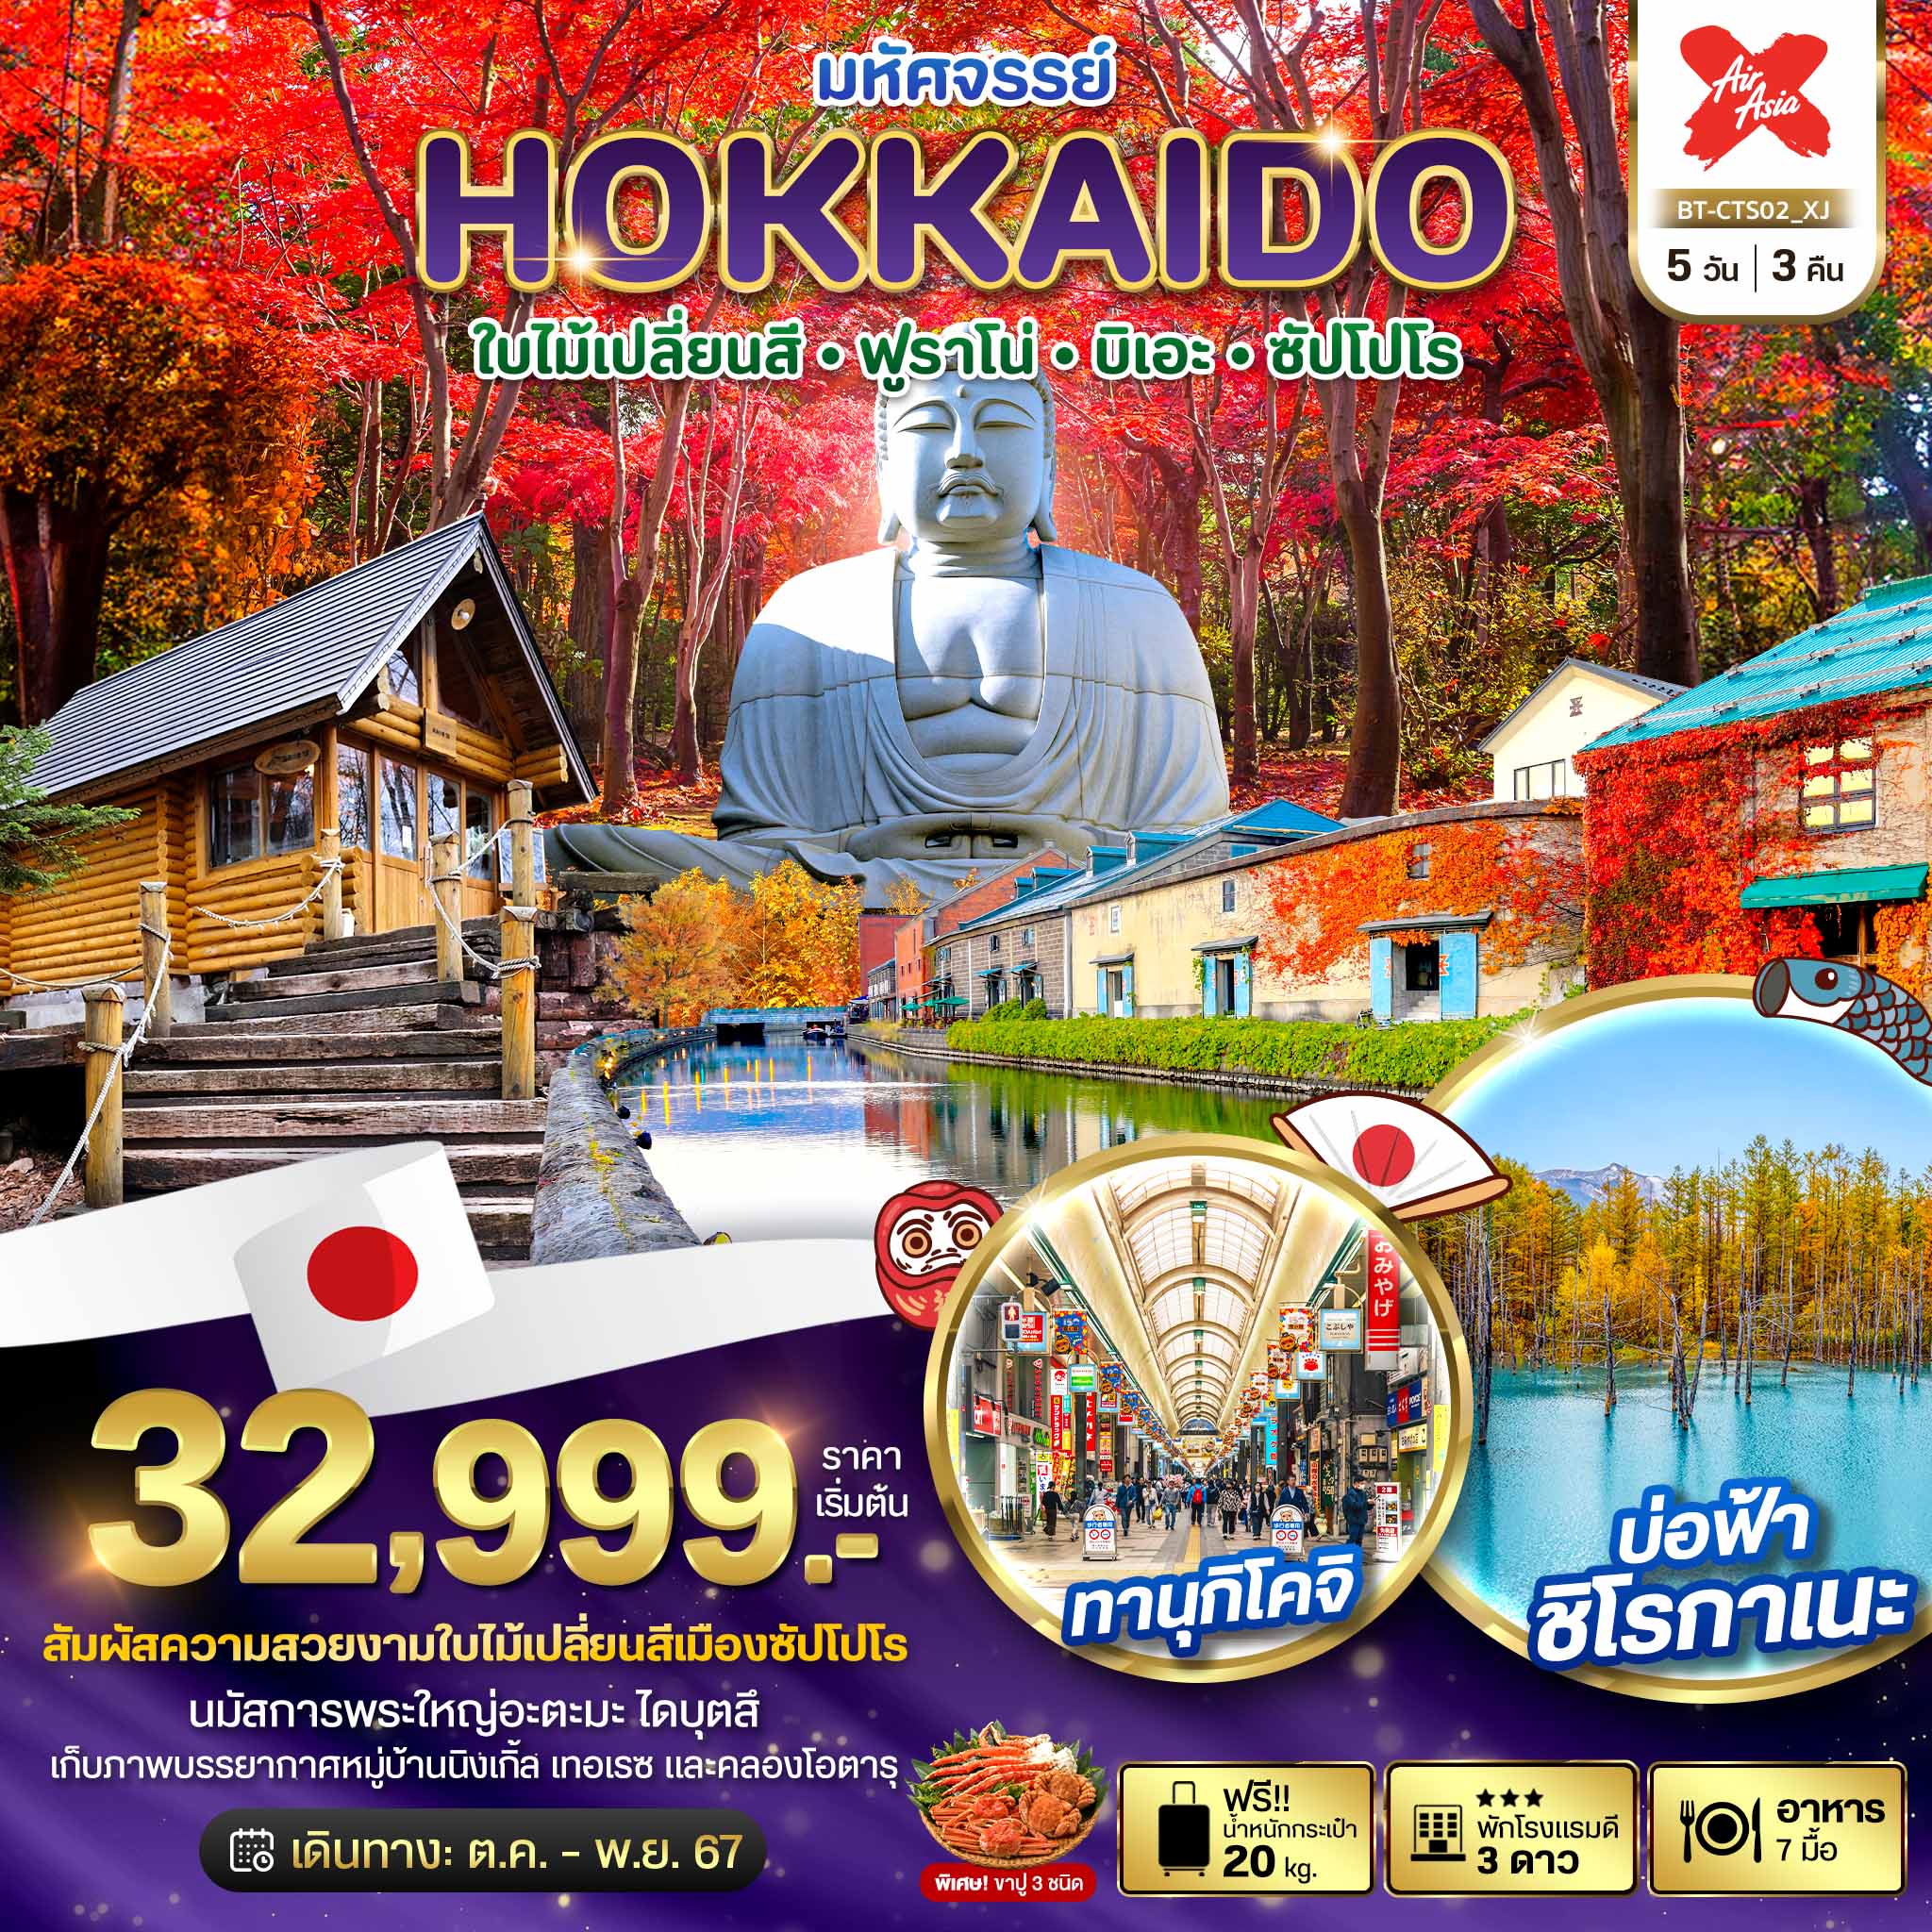 ทัวร์ญี่ปุ่น มหัศจรรย์ HOKKAIDO ใบไม้เปลี่ยนสี ฟูราโน่ บิเอะ ซัปโปโร 5วัน 3คืน (XJ)